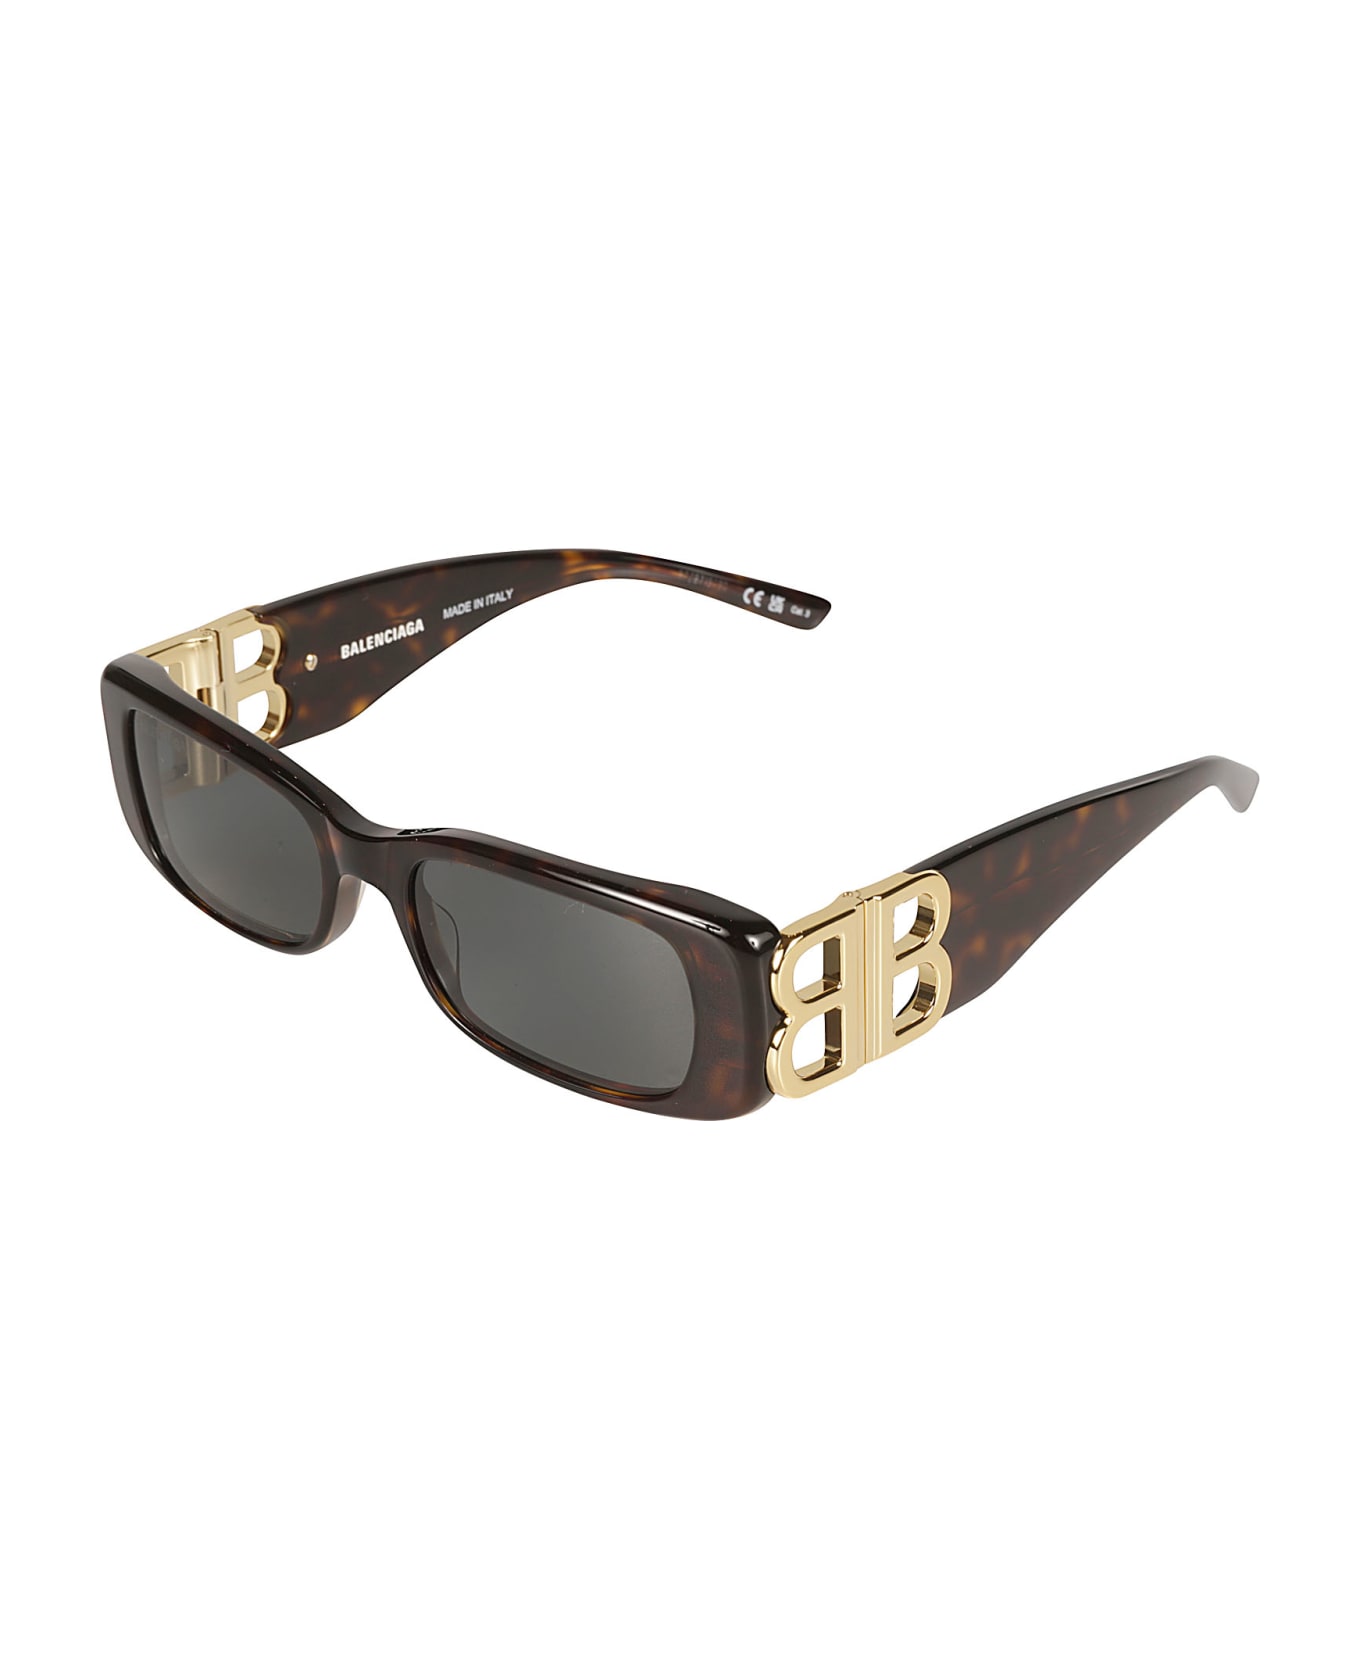 Balenciaga Eyewear Rectangular Frame Logo Sunglasses - Havana/Gold/Green